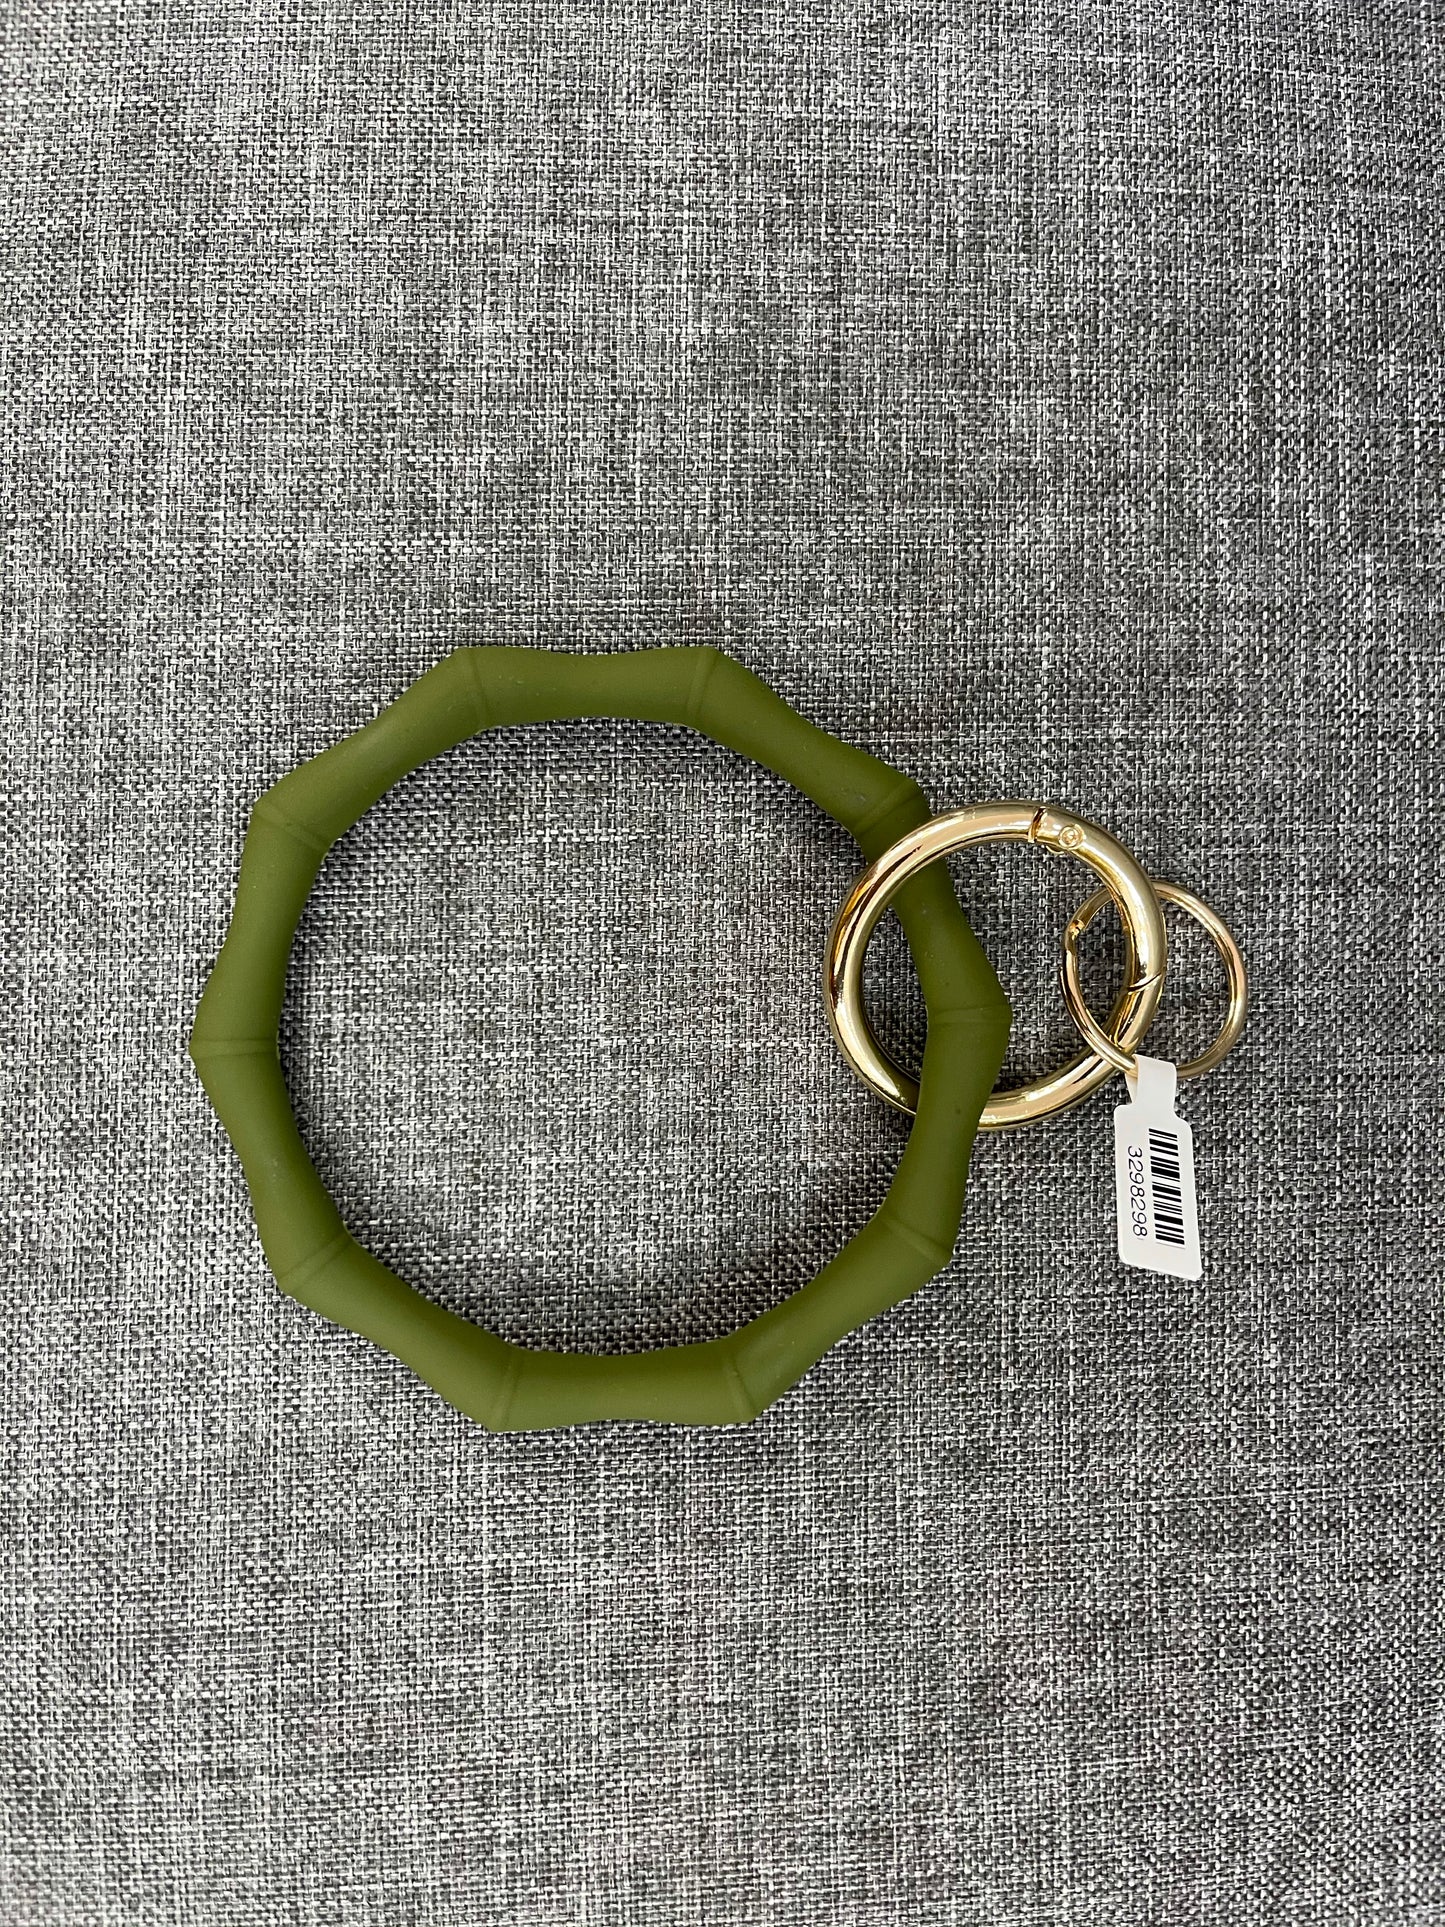 Bamboo Bracelet Keychains